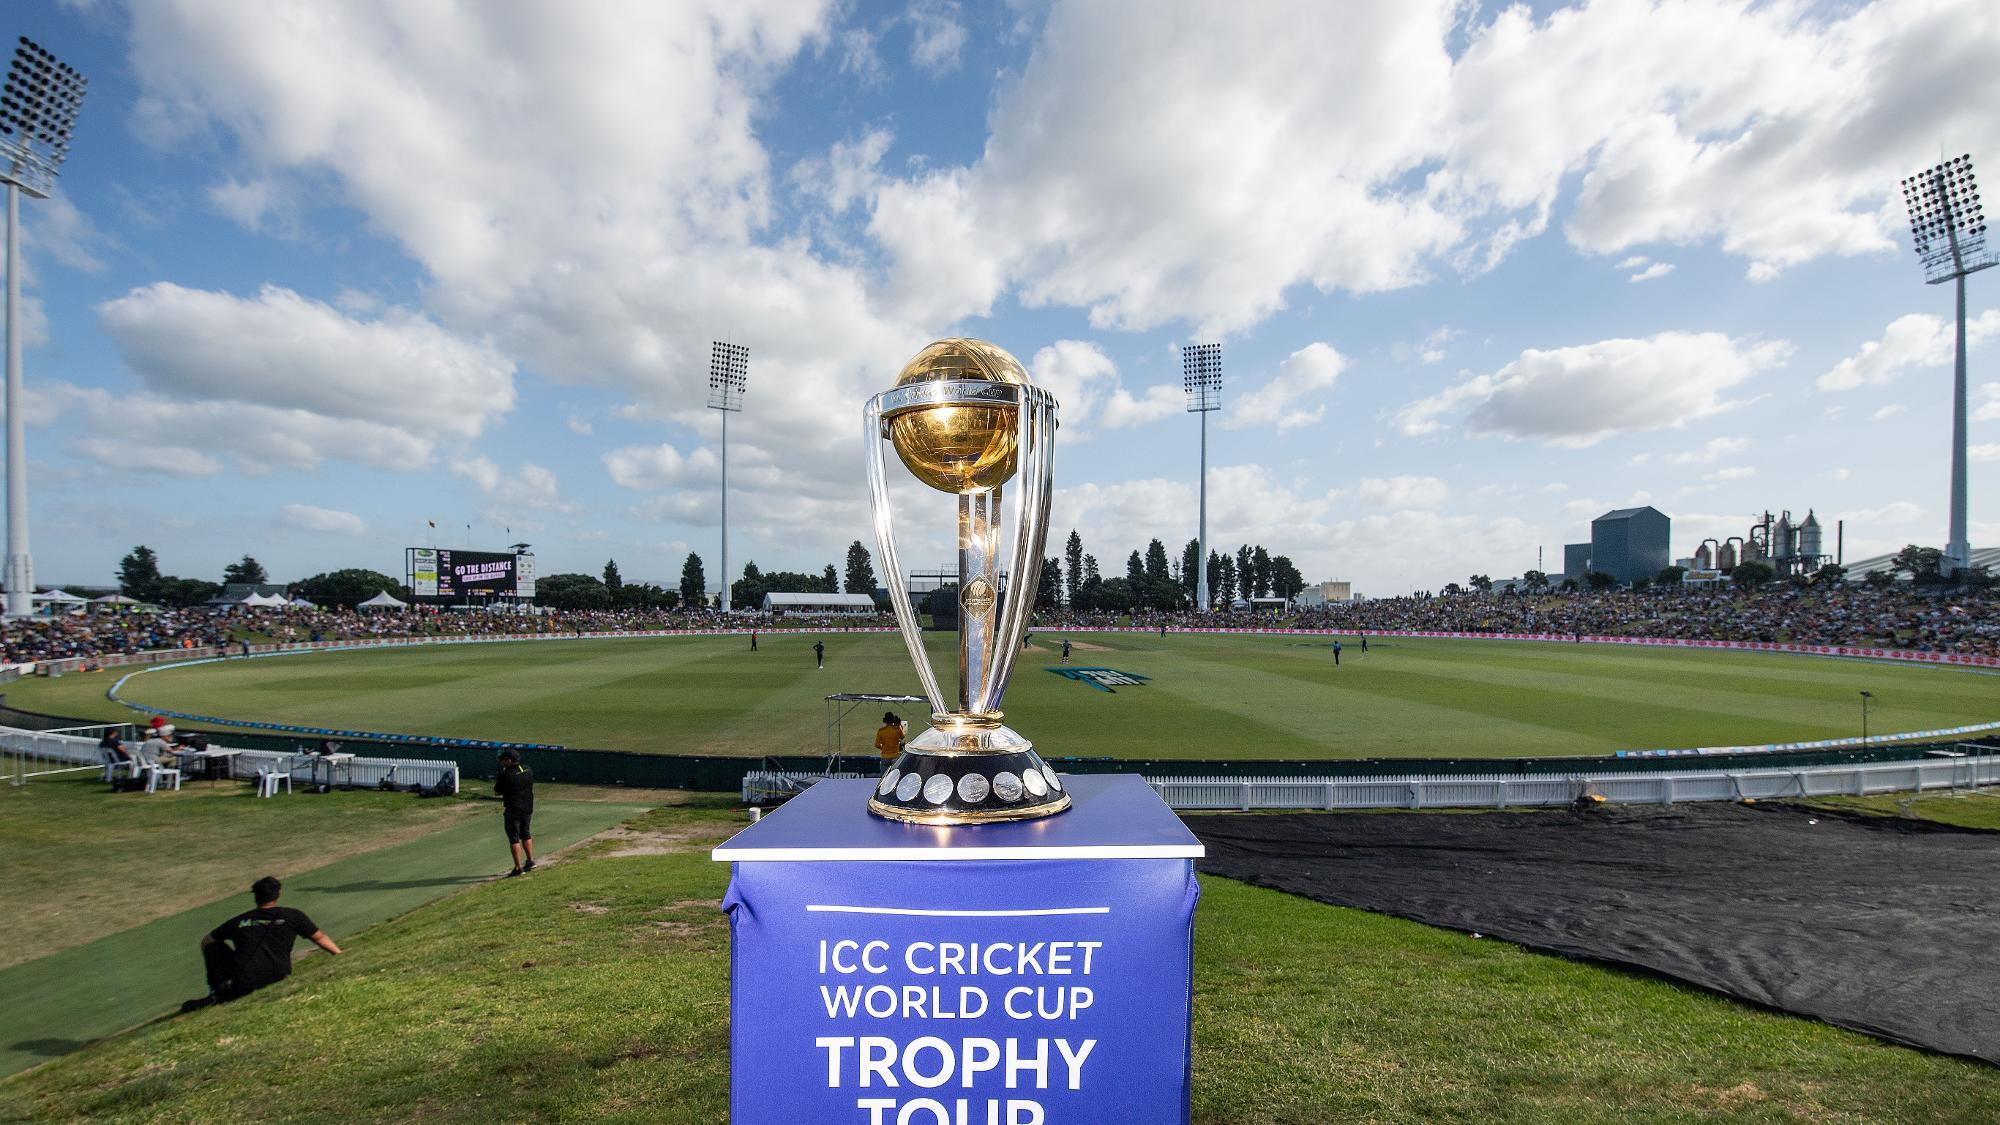 CWC 2019- आईसीसी ने विश्व कप का ऑफिसियल थीम सॉंग किया रिलीज, देखें वीडियो 1